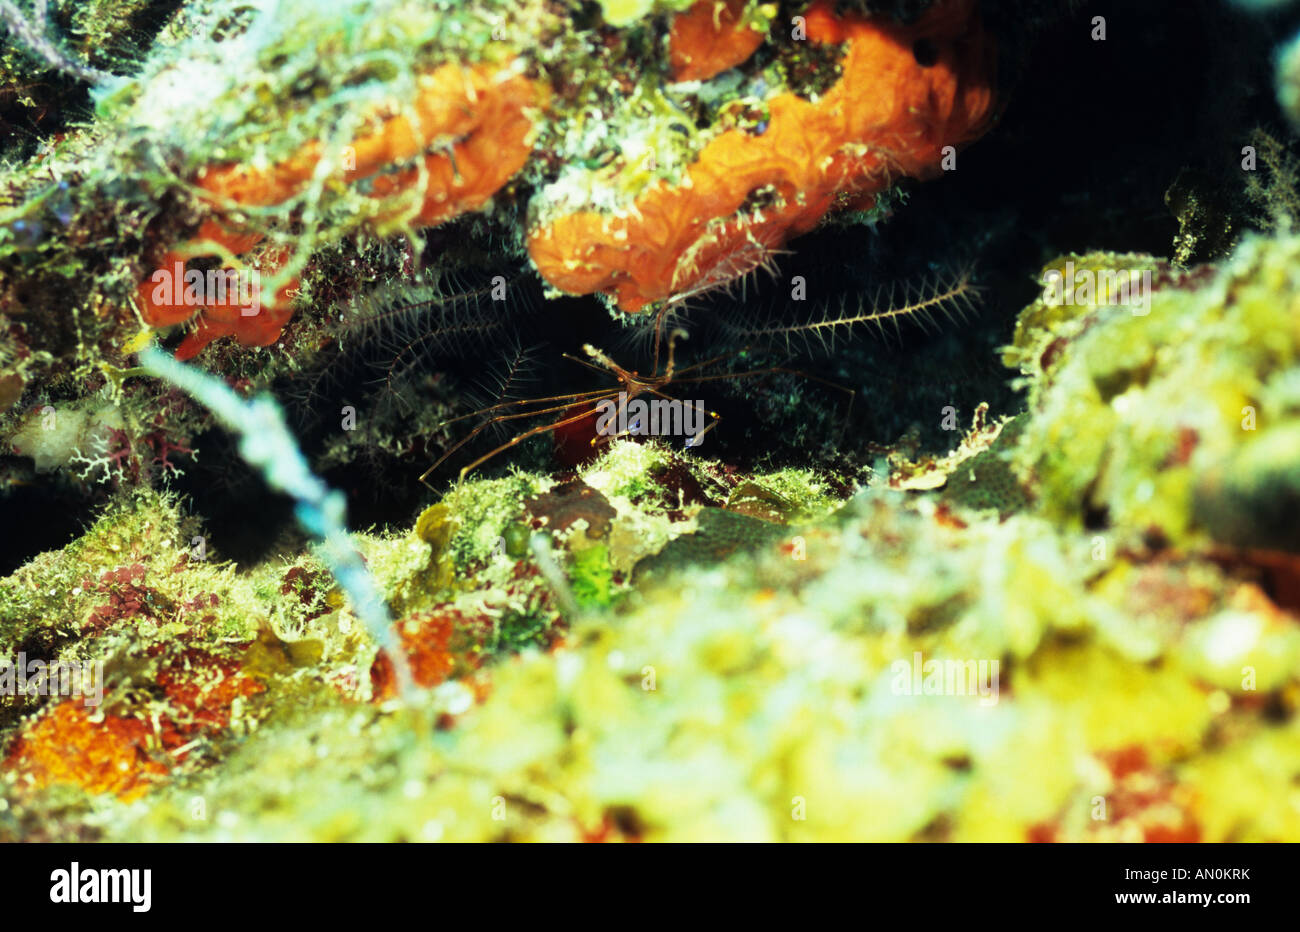 Yellowline Arrow Crab. Underwater ocean Marine Life. Marine Crab. Turks & Caicos Underwater marine life. Crustaceans Stock Photo